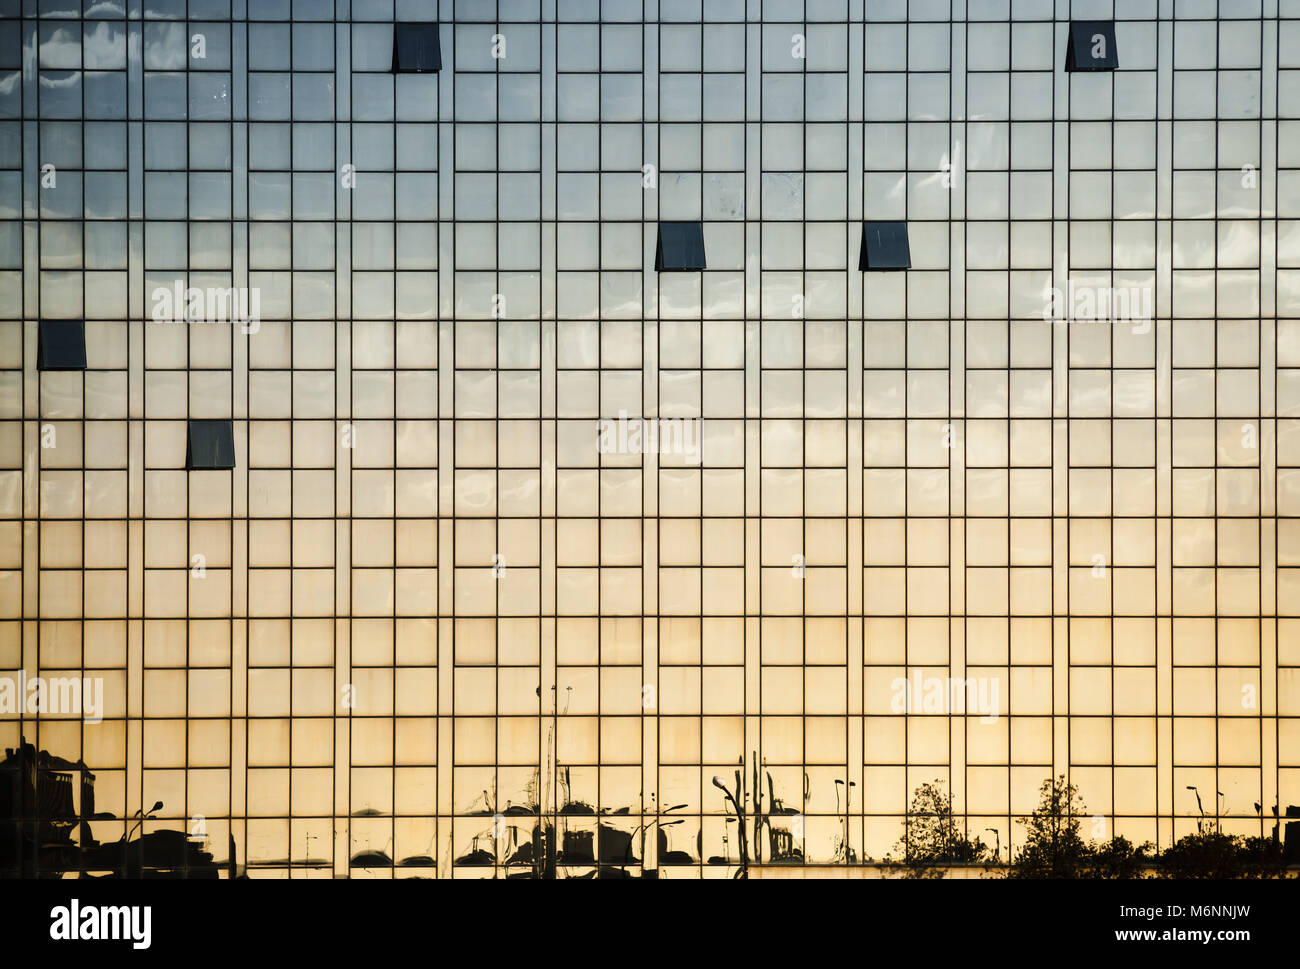 Immeuble de bureaux modernes mur fait de verre avec des fenêtres ouvertes et des réflexions, abstract background texture photo Banque D'Images